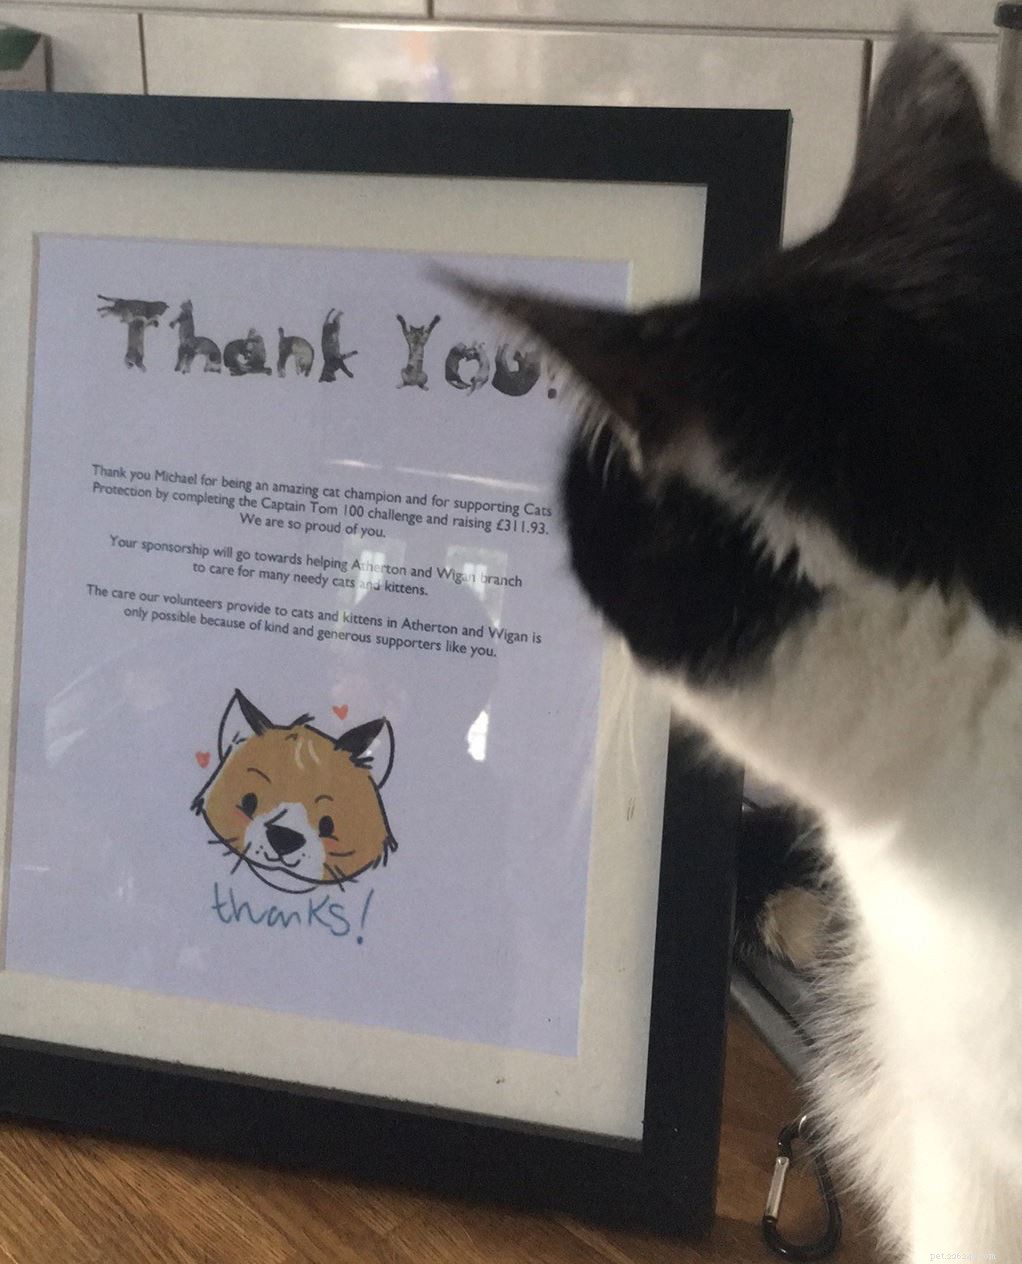 11letý Michael Hart z Wiganu pobavil kočky i příznivce Facebooku, aby získal 300 liber na charitu blízkou jeho srdci